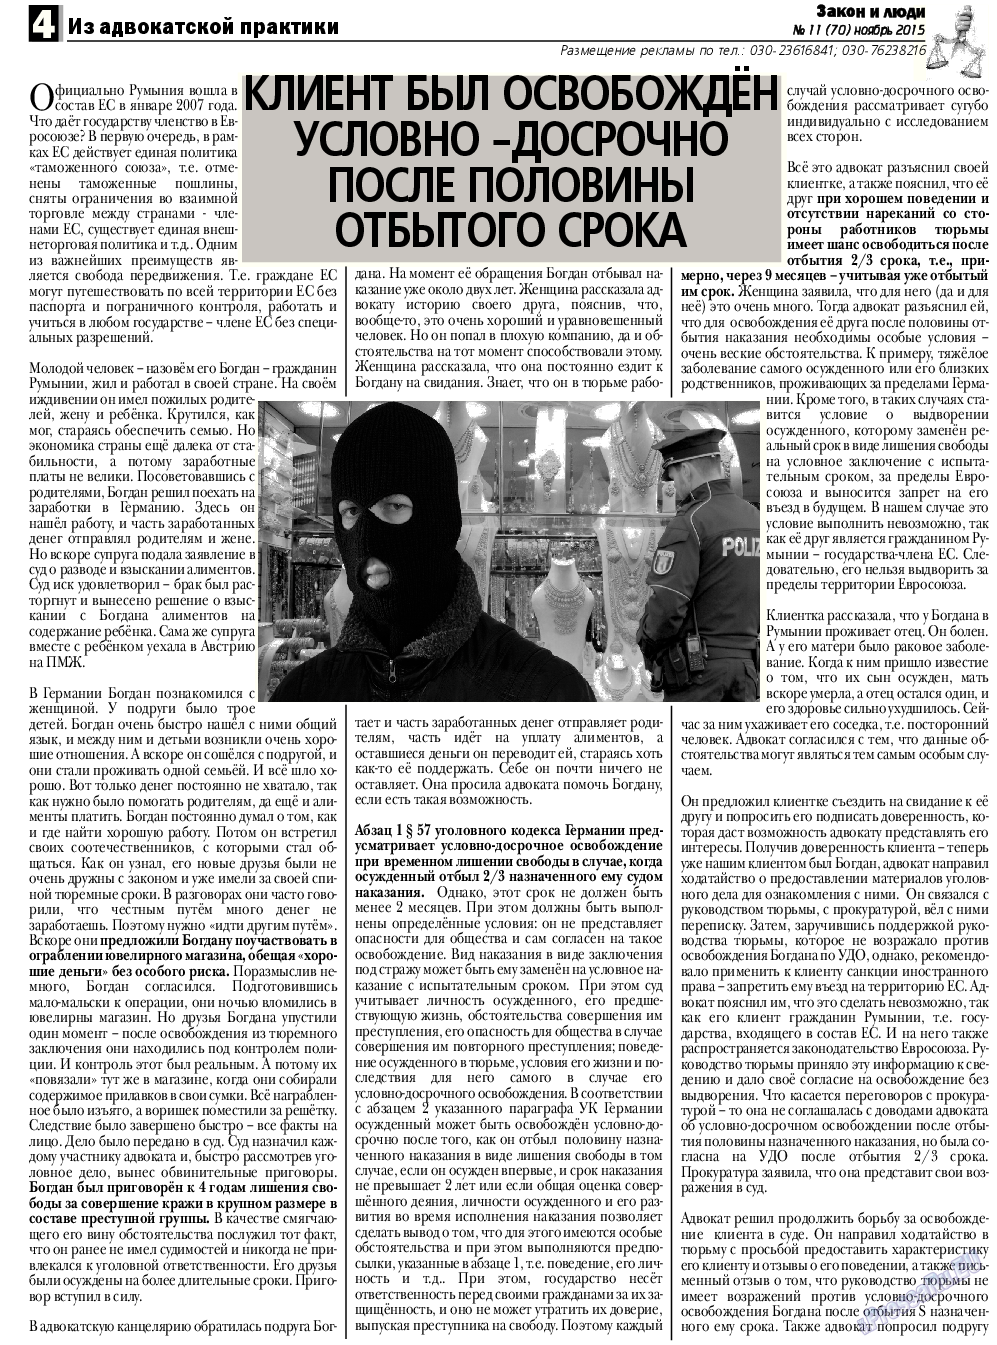 Закон и люди, газета. 2015 №11 стр.4